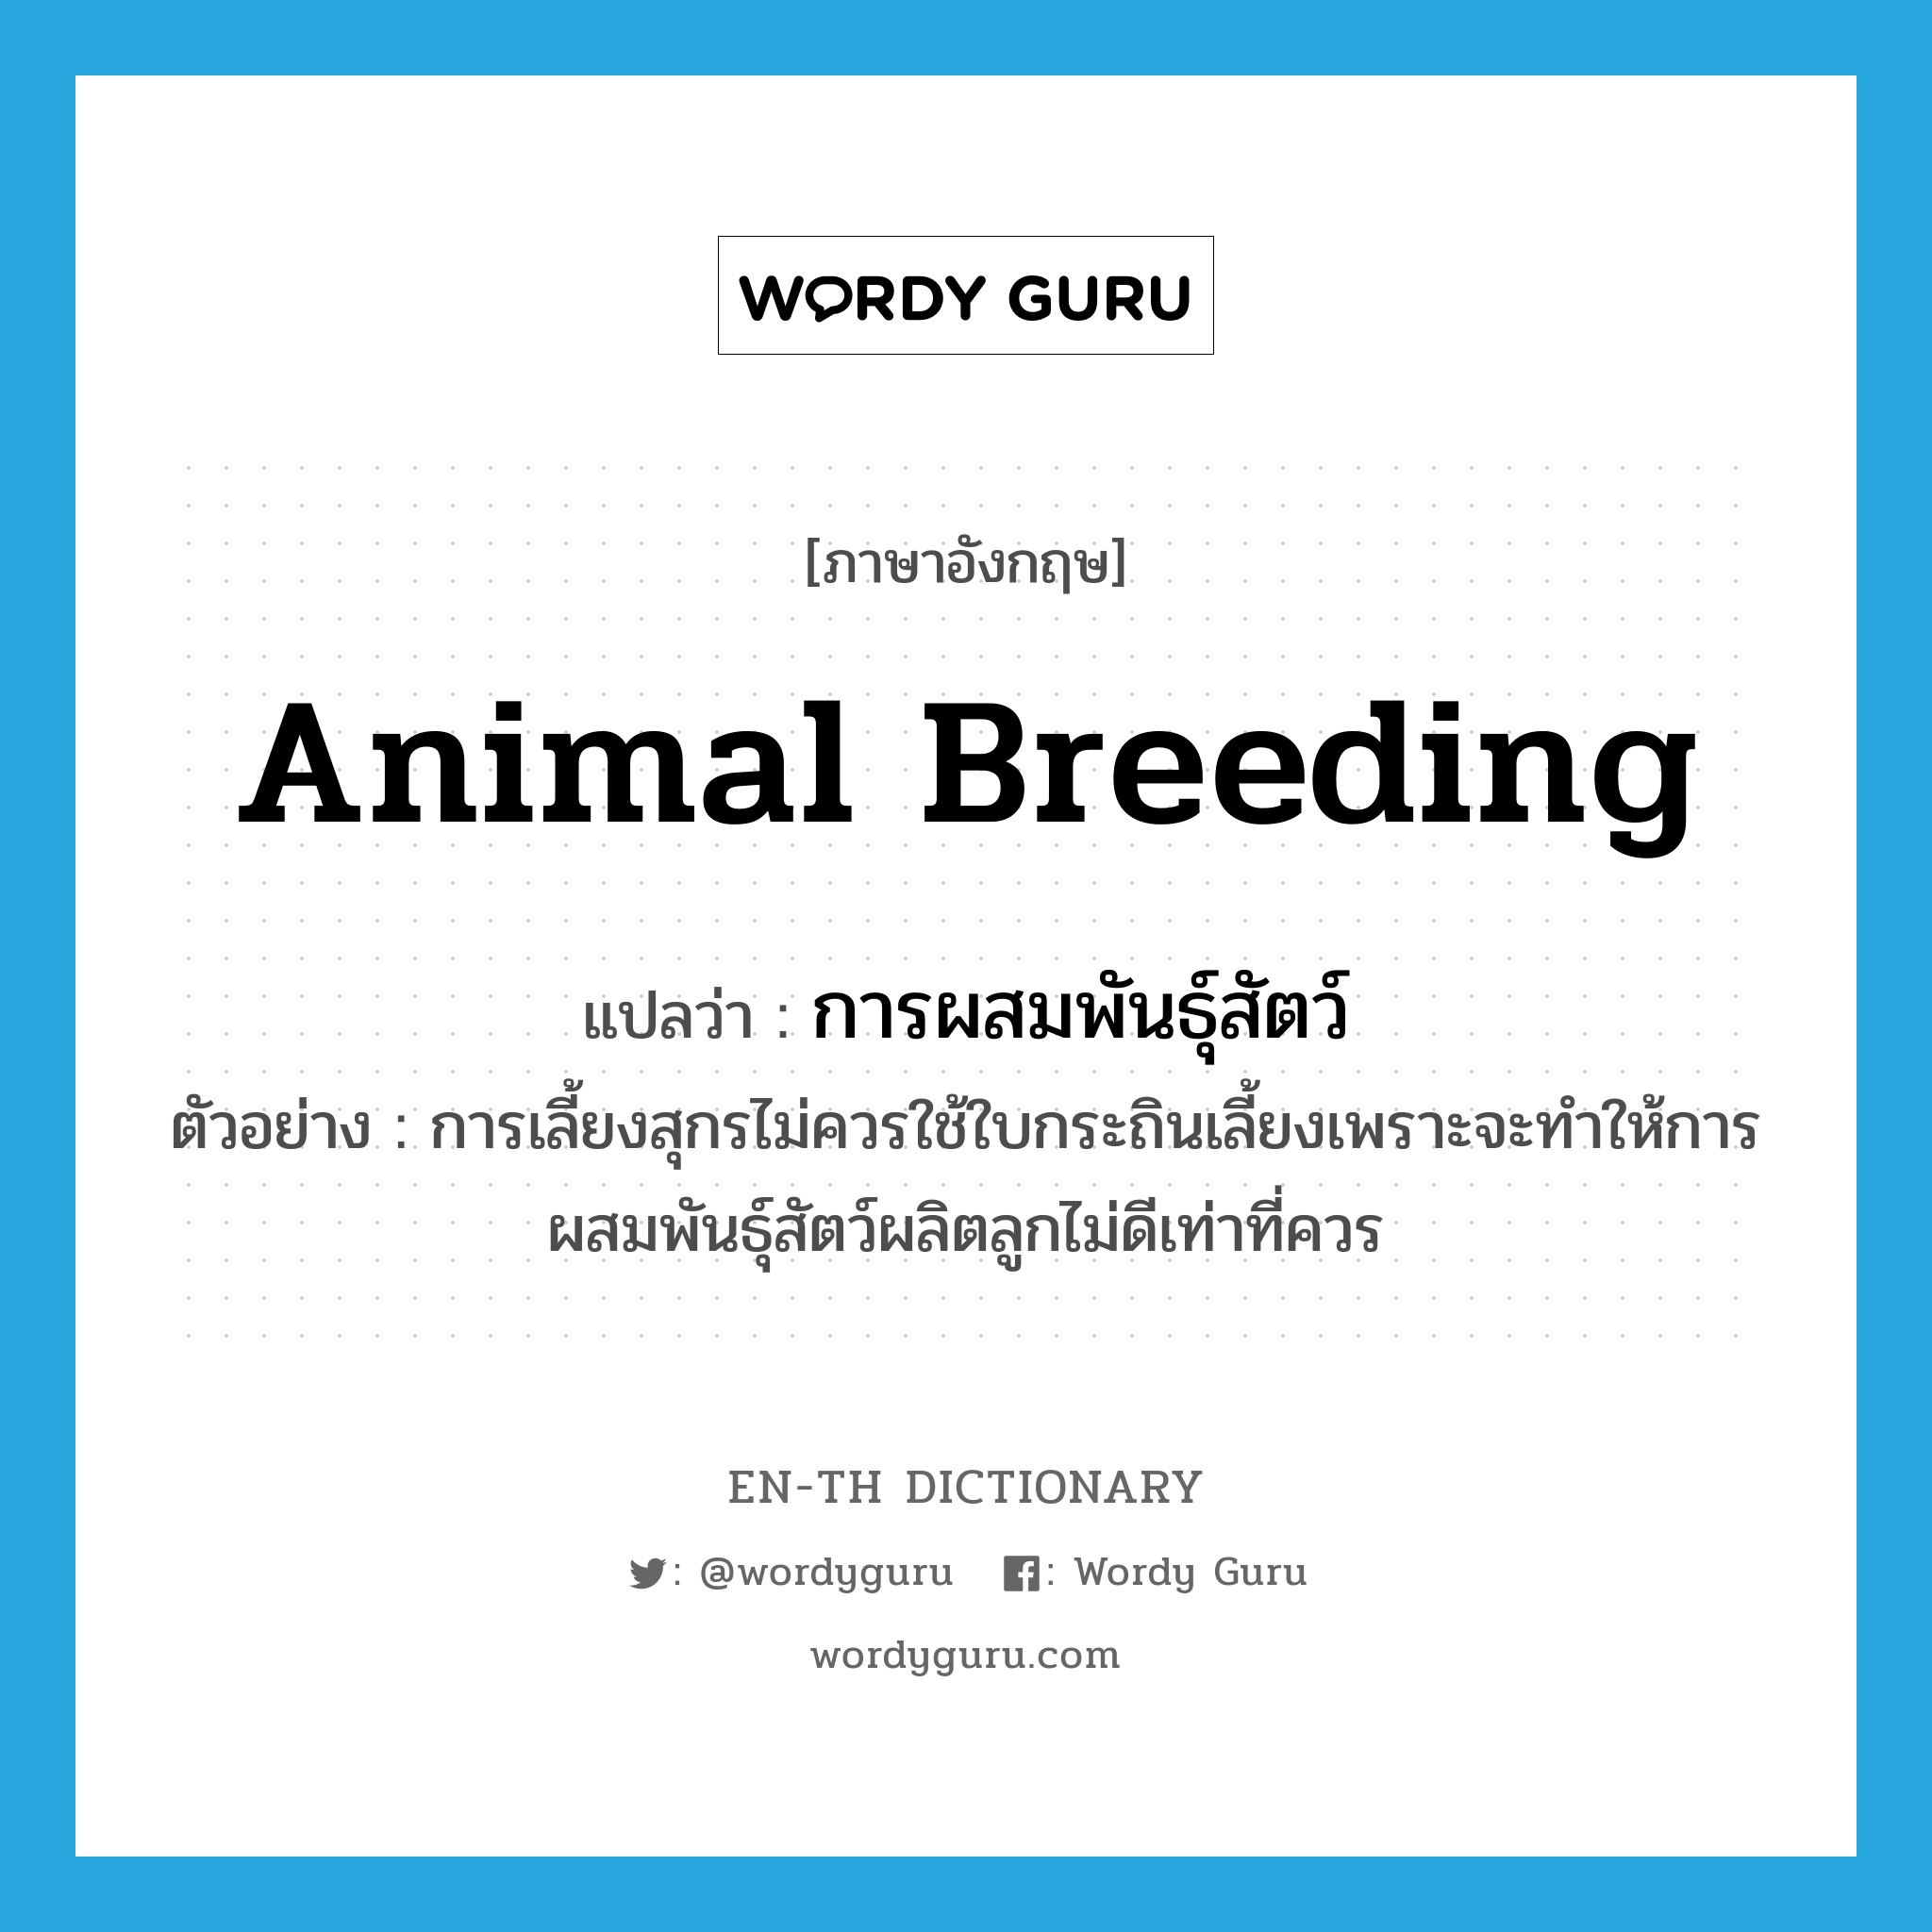 animal breeding แปลว่า?, คำศัพท์ภาษาอังกฤษ animal breeding แปลว่า การผสมพันธุ์สัตว์ ประเภท N ตัวอย่าง การเลี้ยงสุกรไม่ควรใช้ใบกระถินเลี้ยงเพราะจะทำให้การผสมพันธุ์สัตว์ผลิตลูกไม่ดีเท่าที่ควร หมวด N